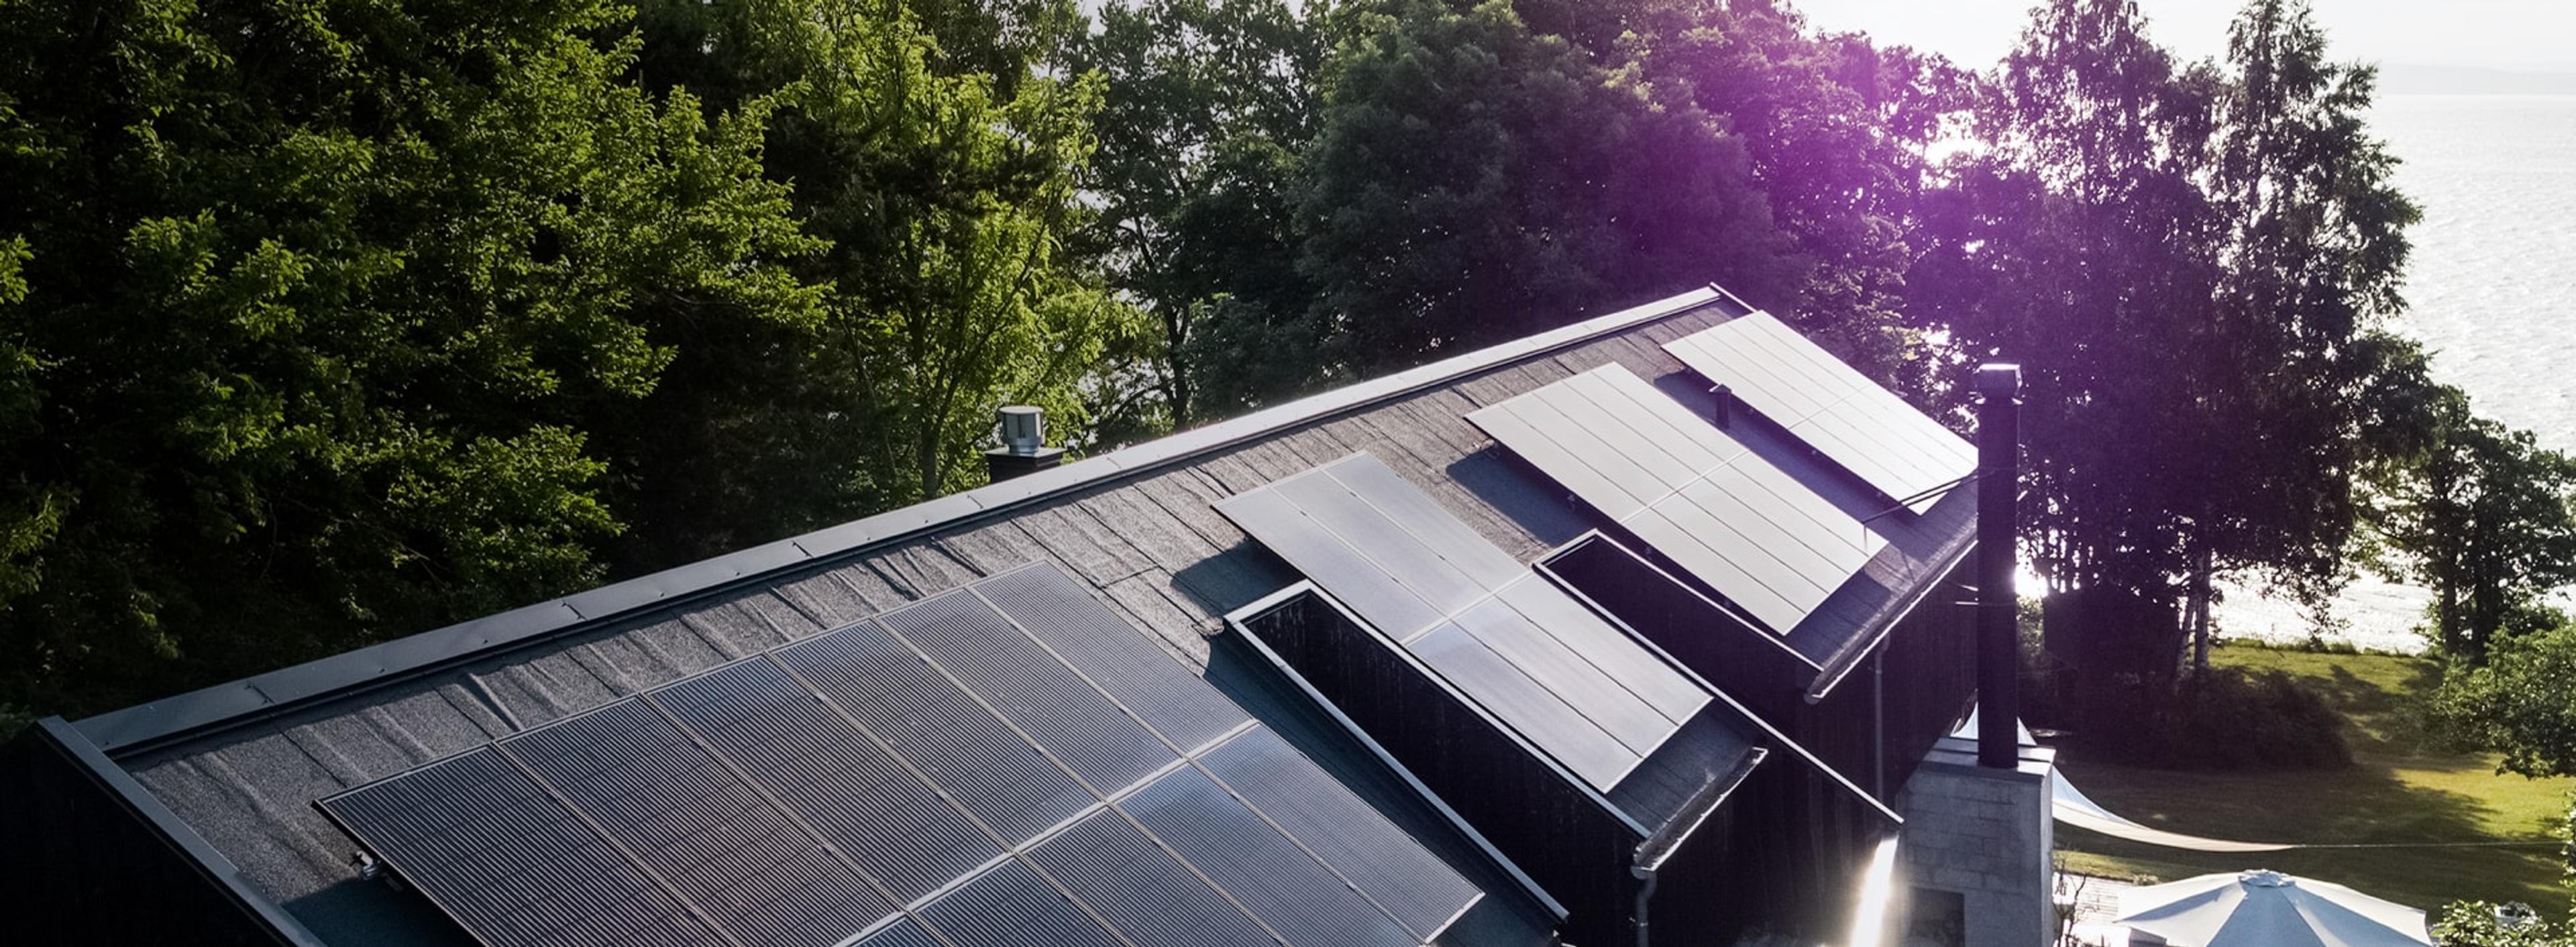 solcellepaneler på et hustak